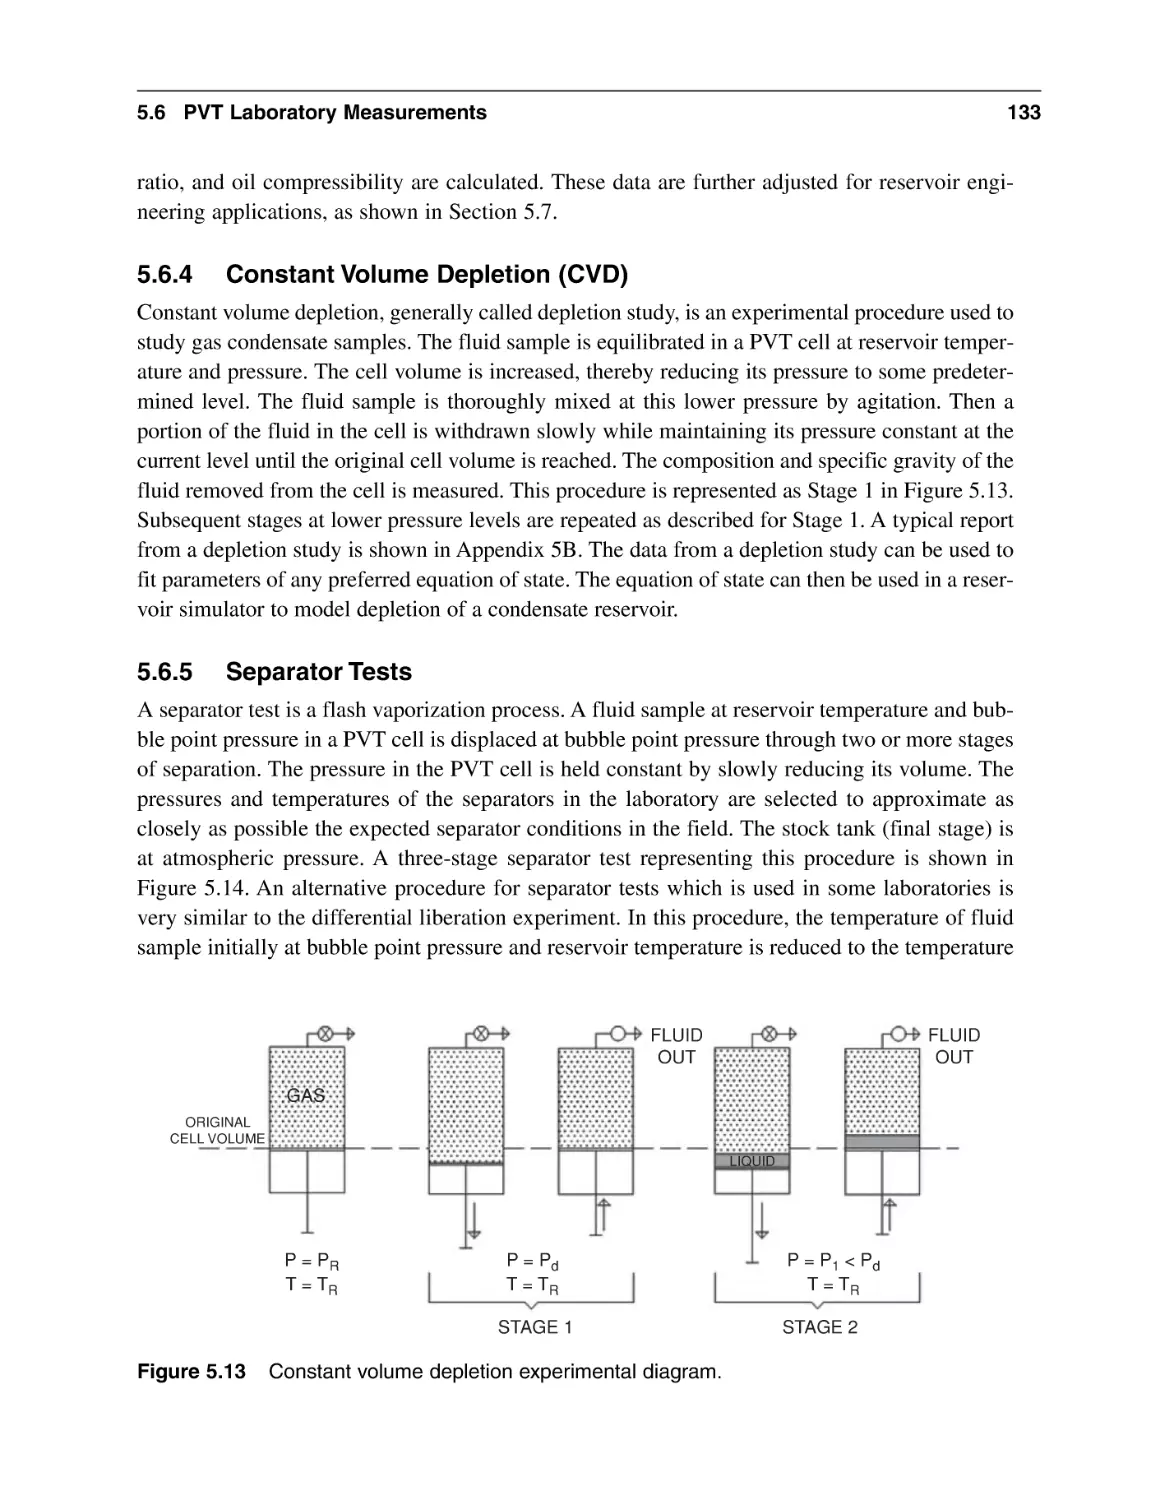 5.6.4 Constant Volume Depletion (CVD)
5.6.5 Separator Tests